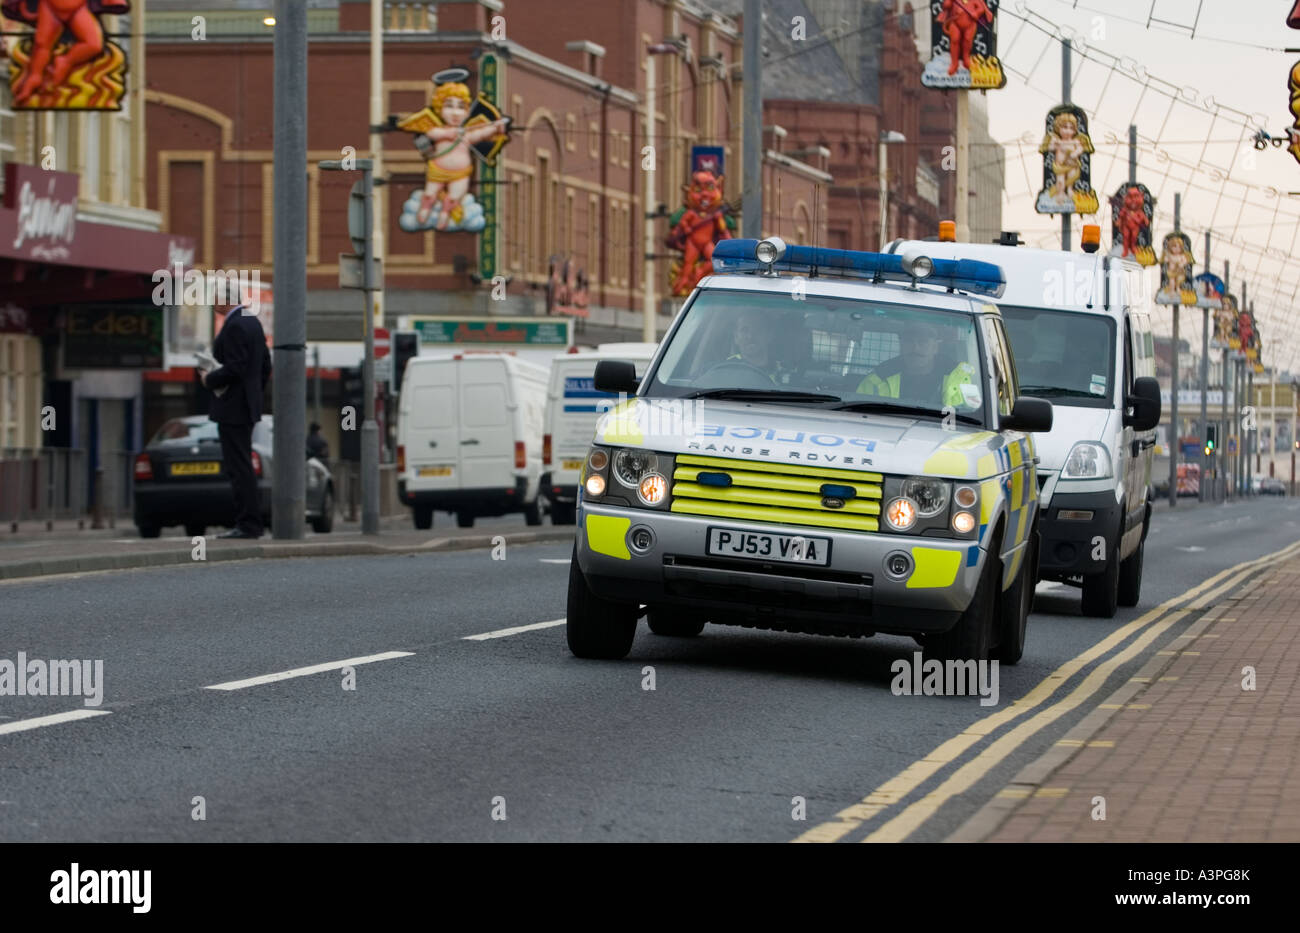 Police Range Rover in Blackpool Stock Photo